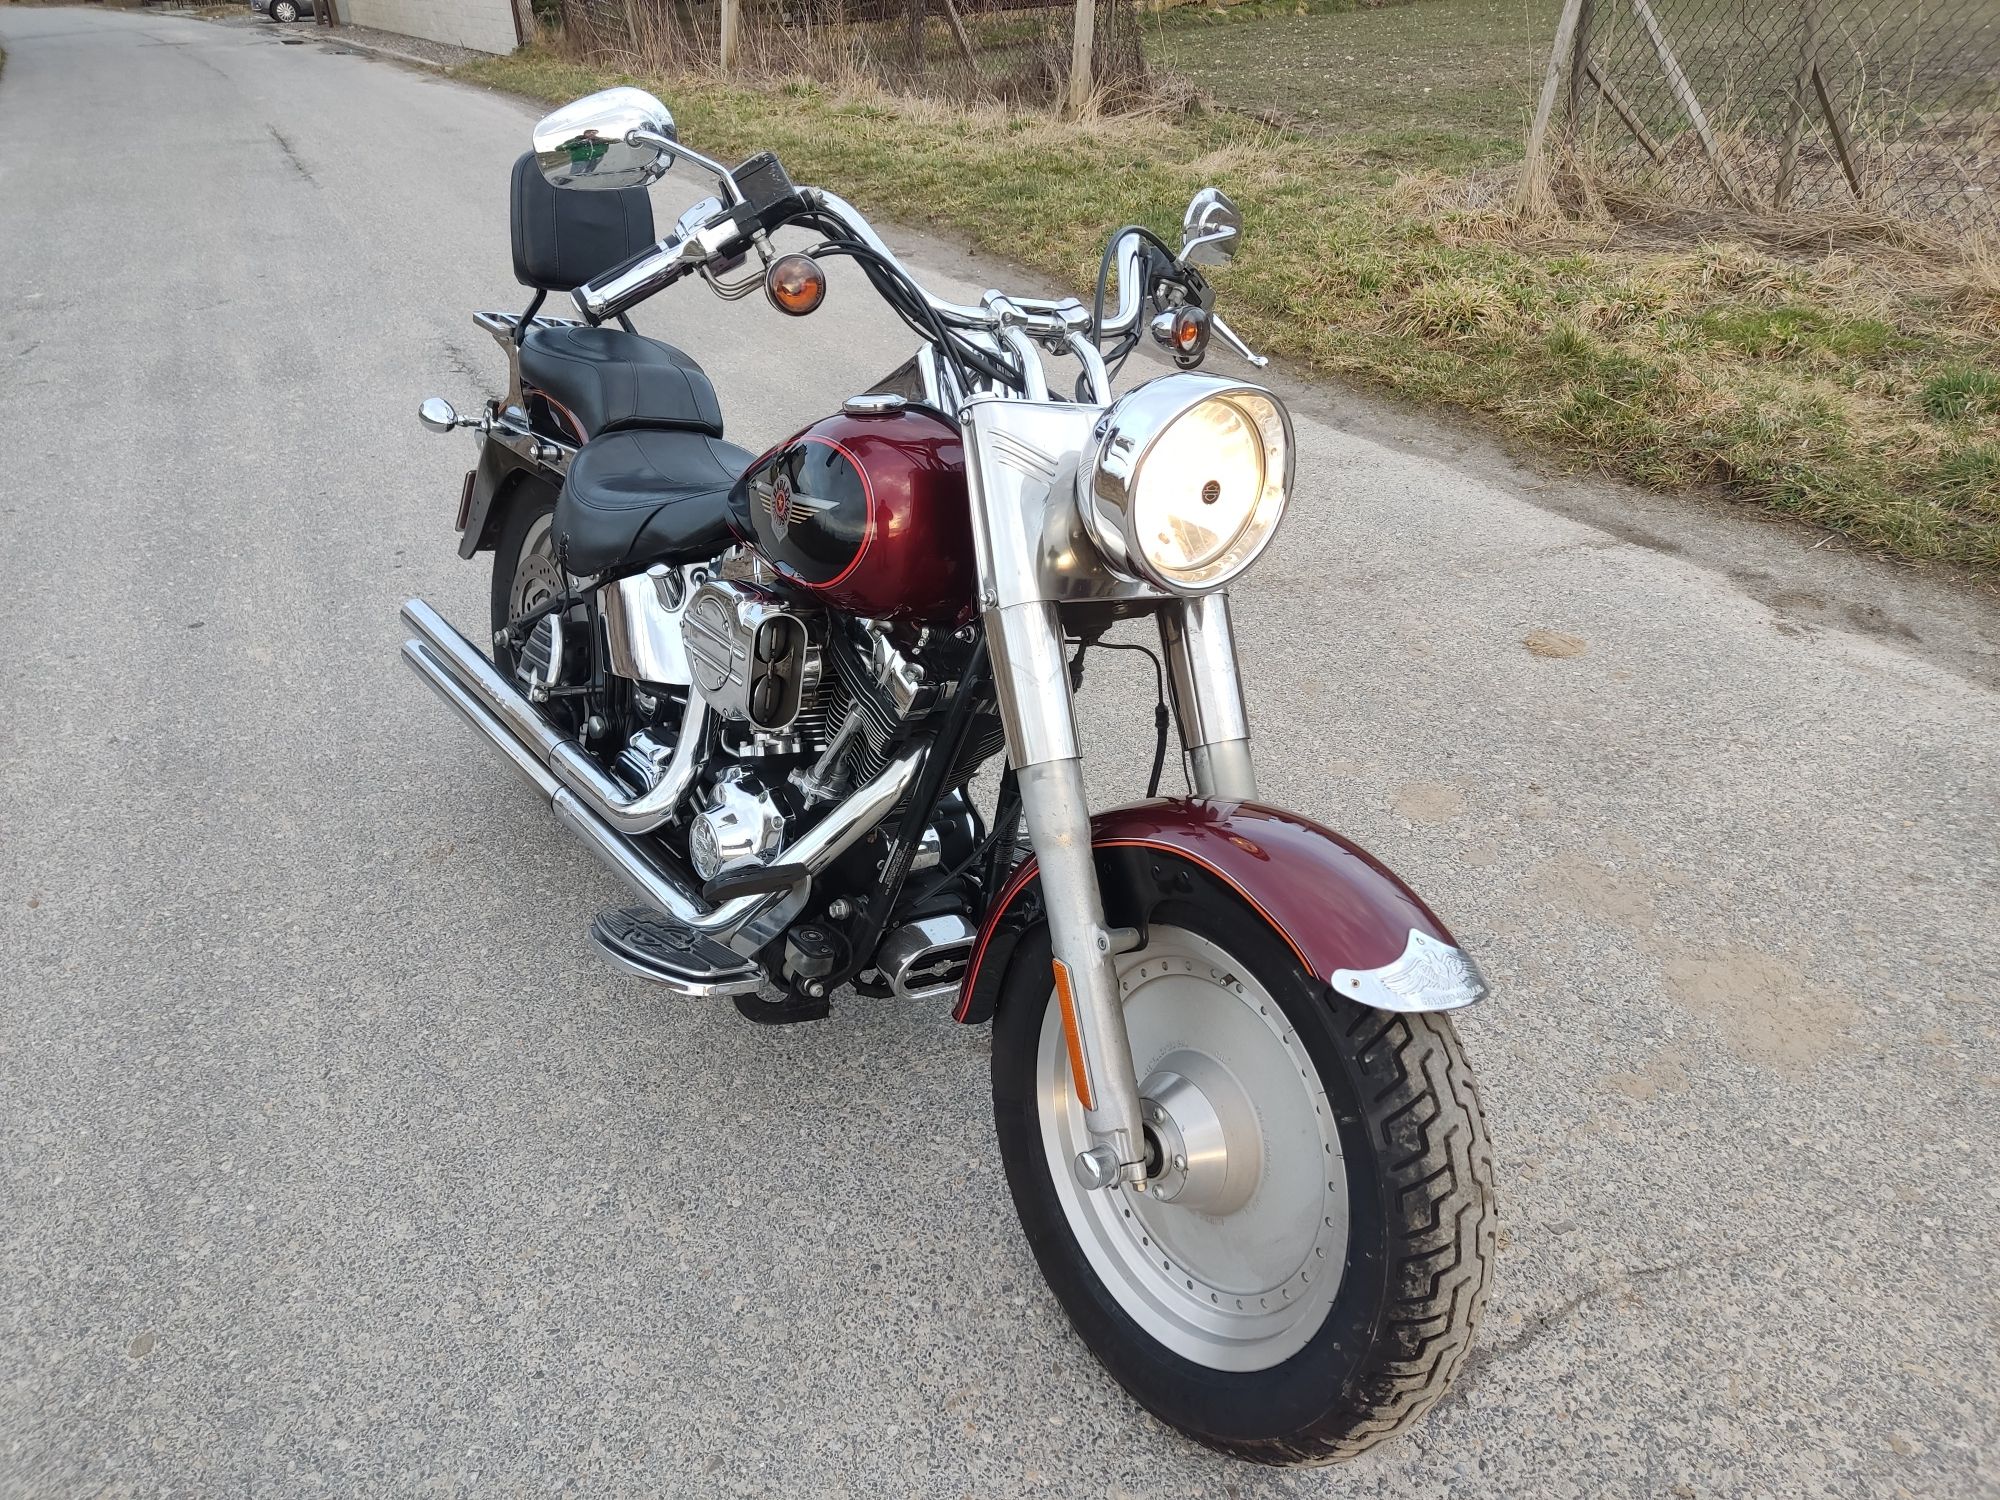 Harley Davidson fat boy 1500 flstf możliwy transport